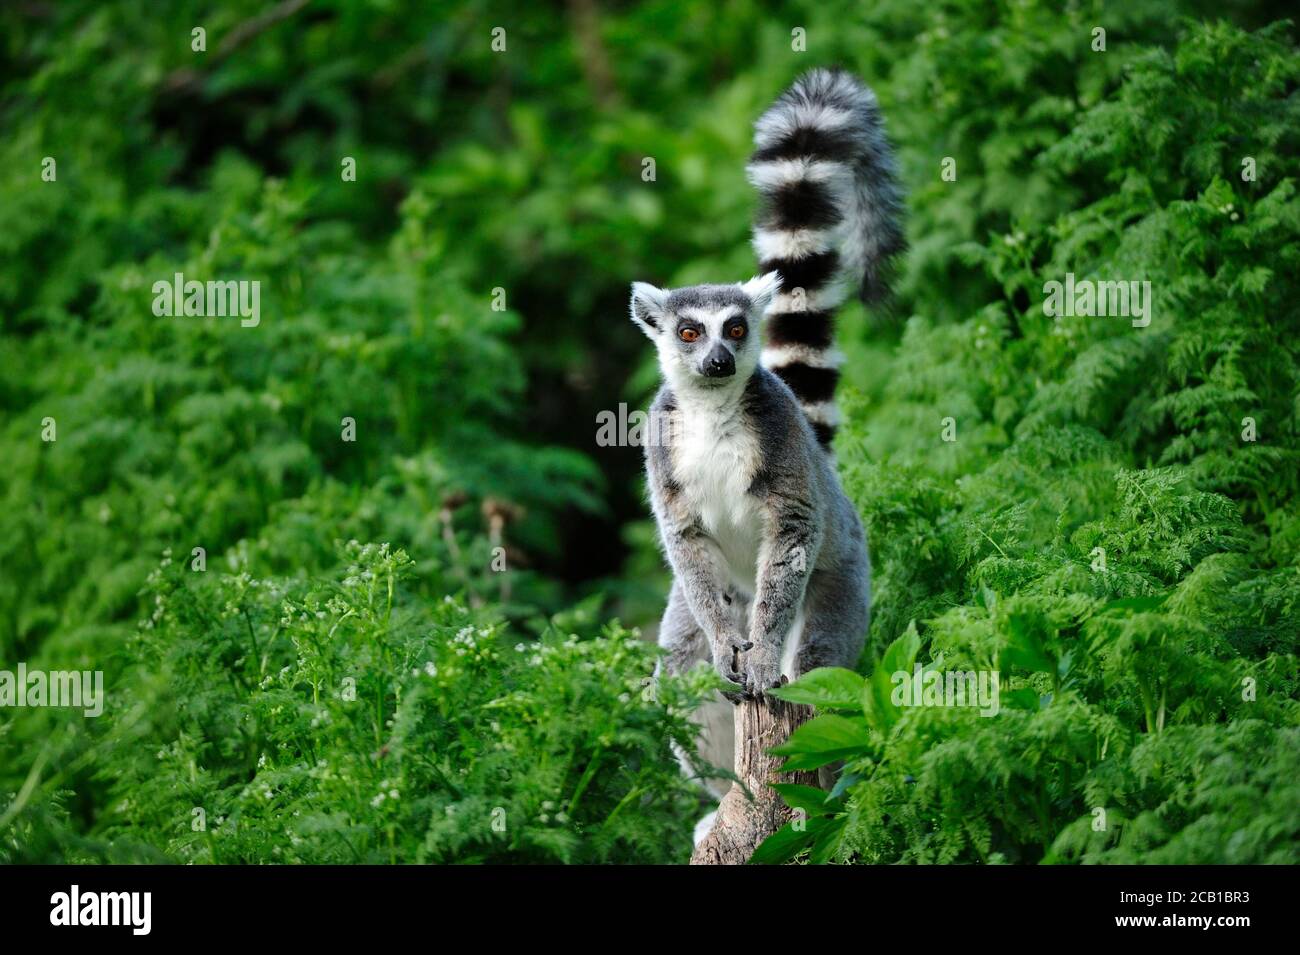 Lemur con coda ad anello (Lemur catta) si erge con coda rialzata su un ramo tra piante verdi, in cattività, evento Madagascar Foto Stock